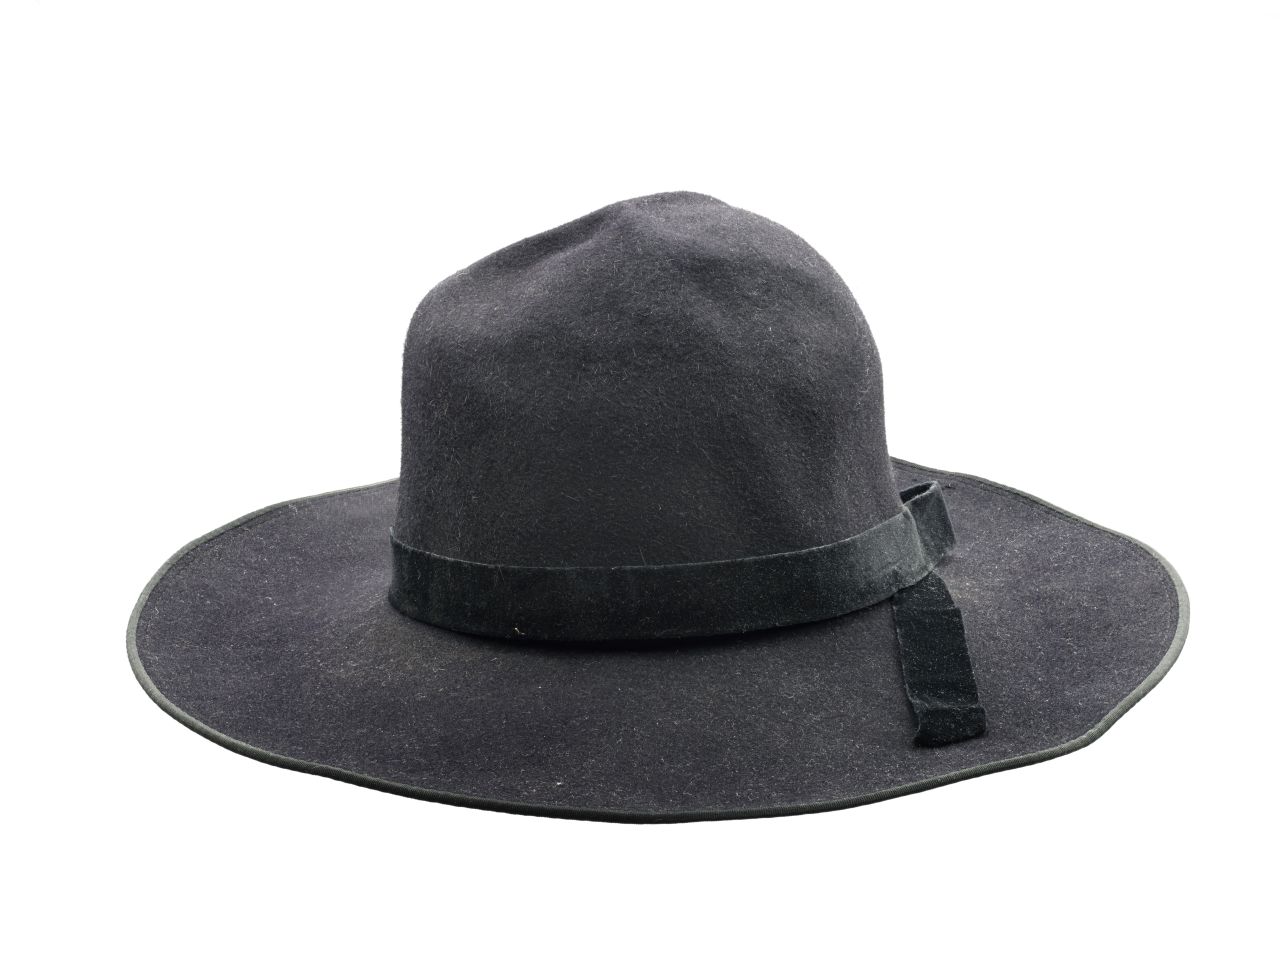 Schwarzer Hut mit breiter Krempe und einem langen Samtband.